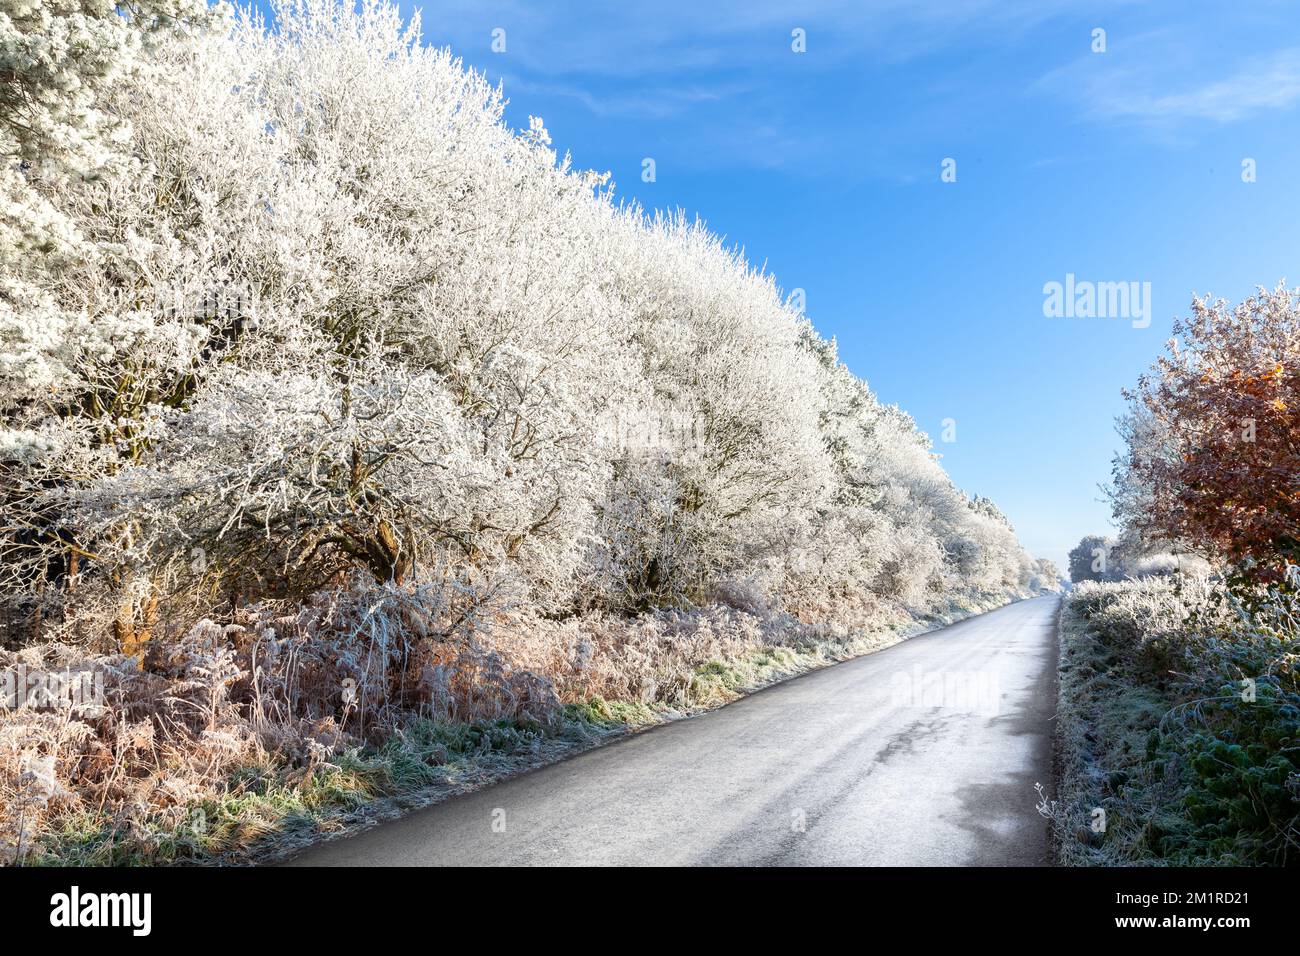 Carretera helada de invierno con heladas de árboles en las carreteras rurales del Reino Unido. Clima helado con cielos azules claros en diciembre Foto de stock